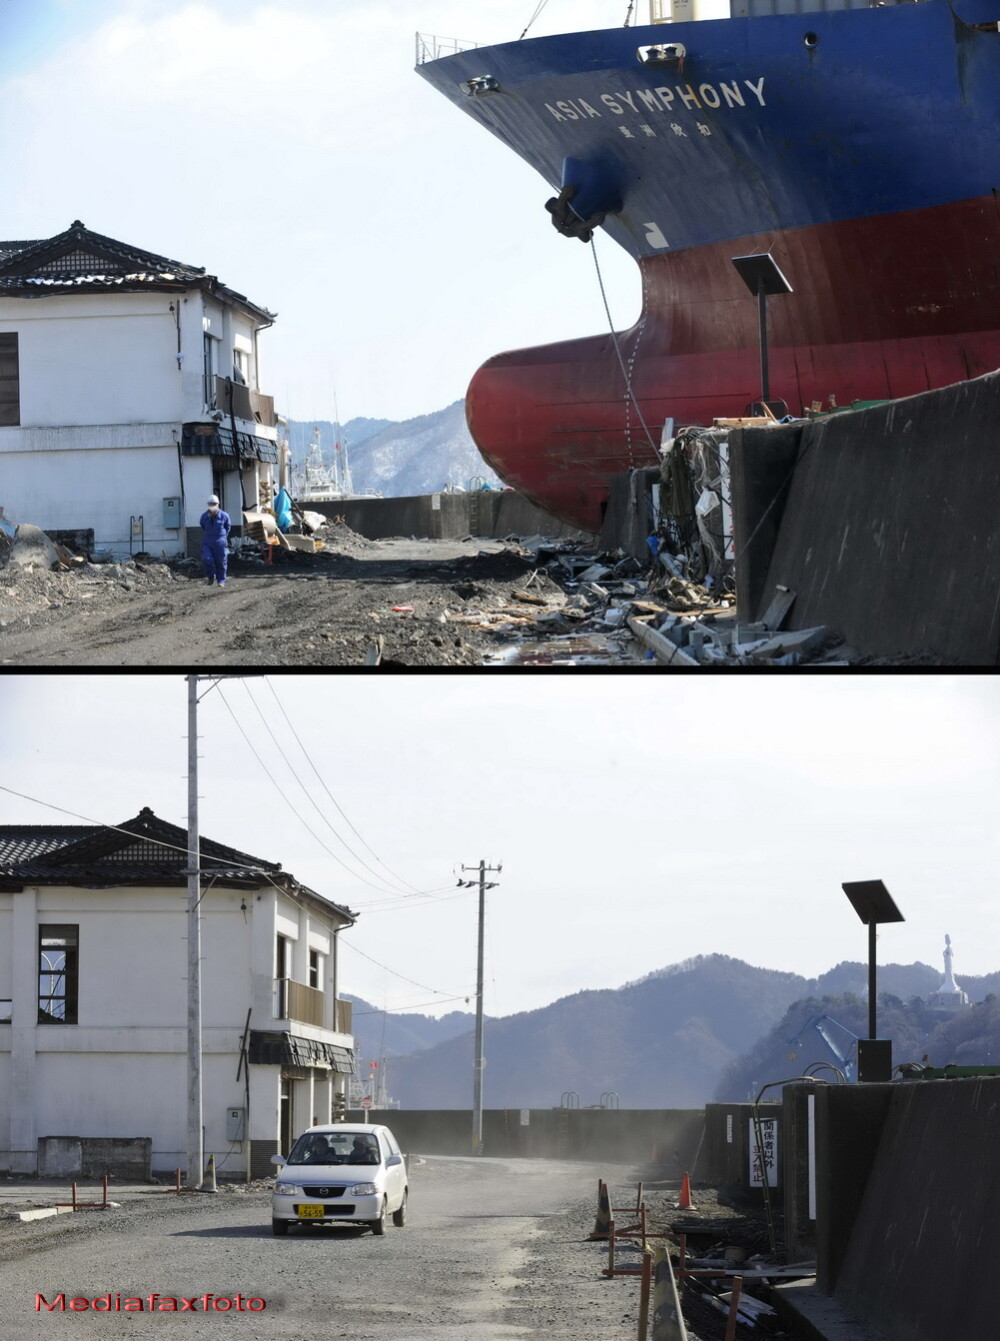 Barca de pe casa, imaginea simbol a Japoniei dupa tsunami. Cum arata acest loc astazi - Imaginea 3